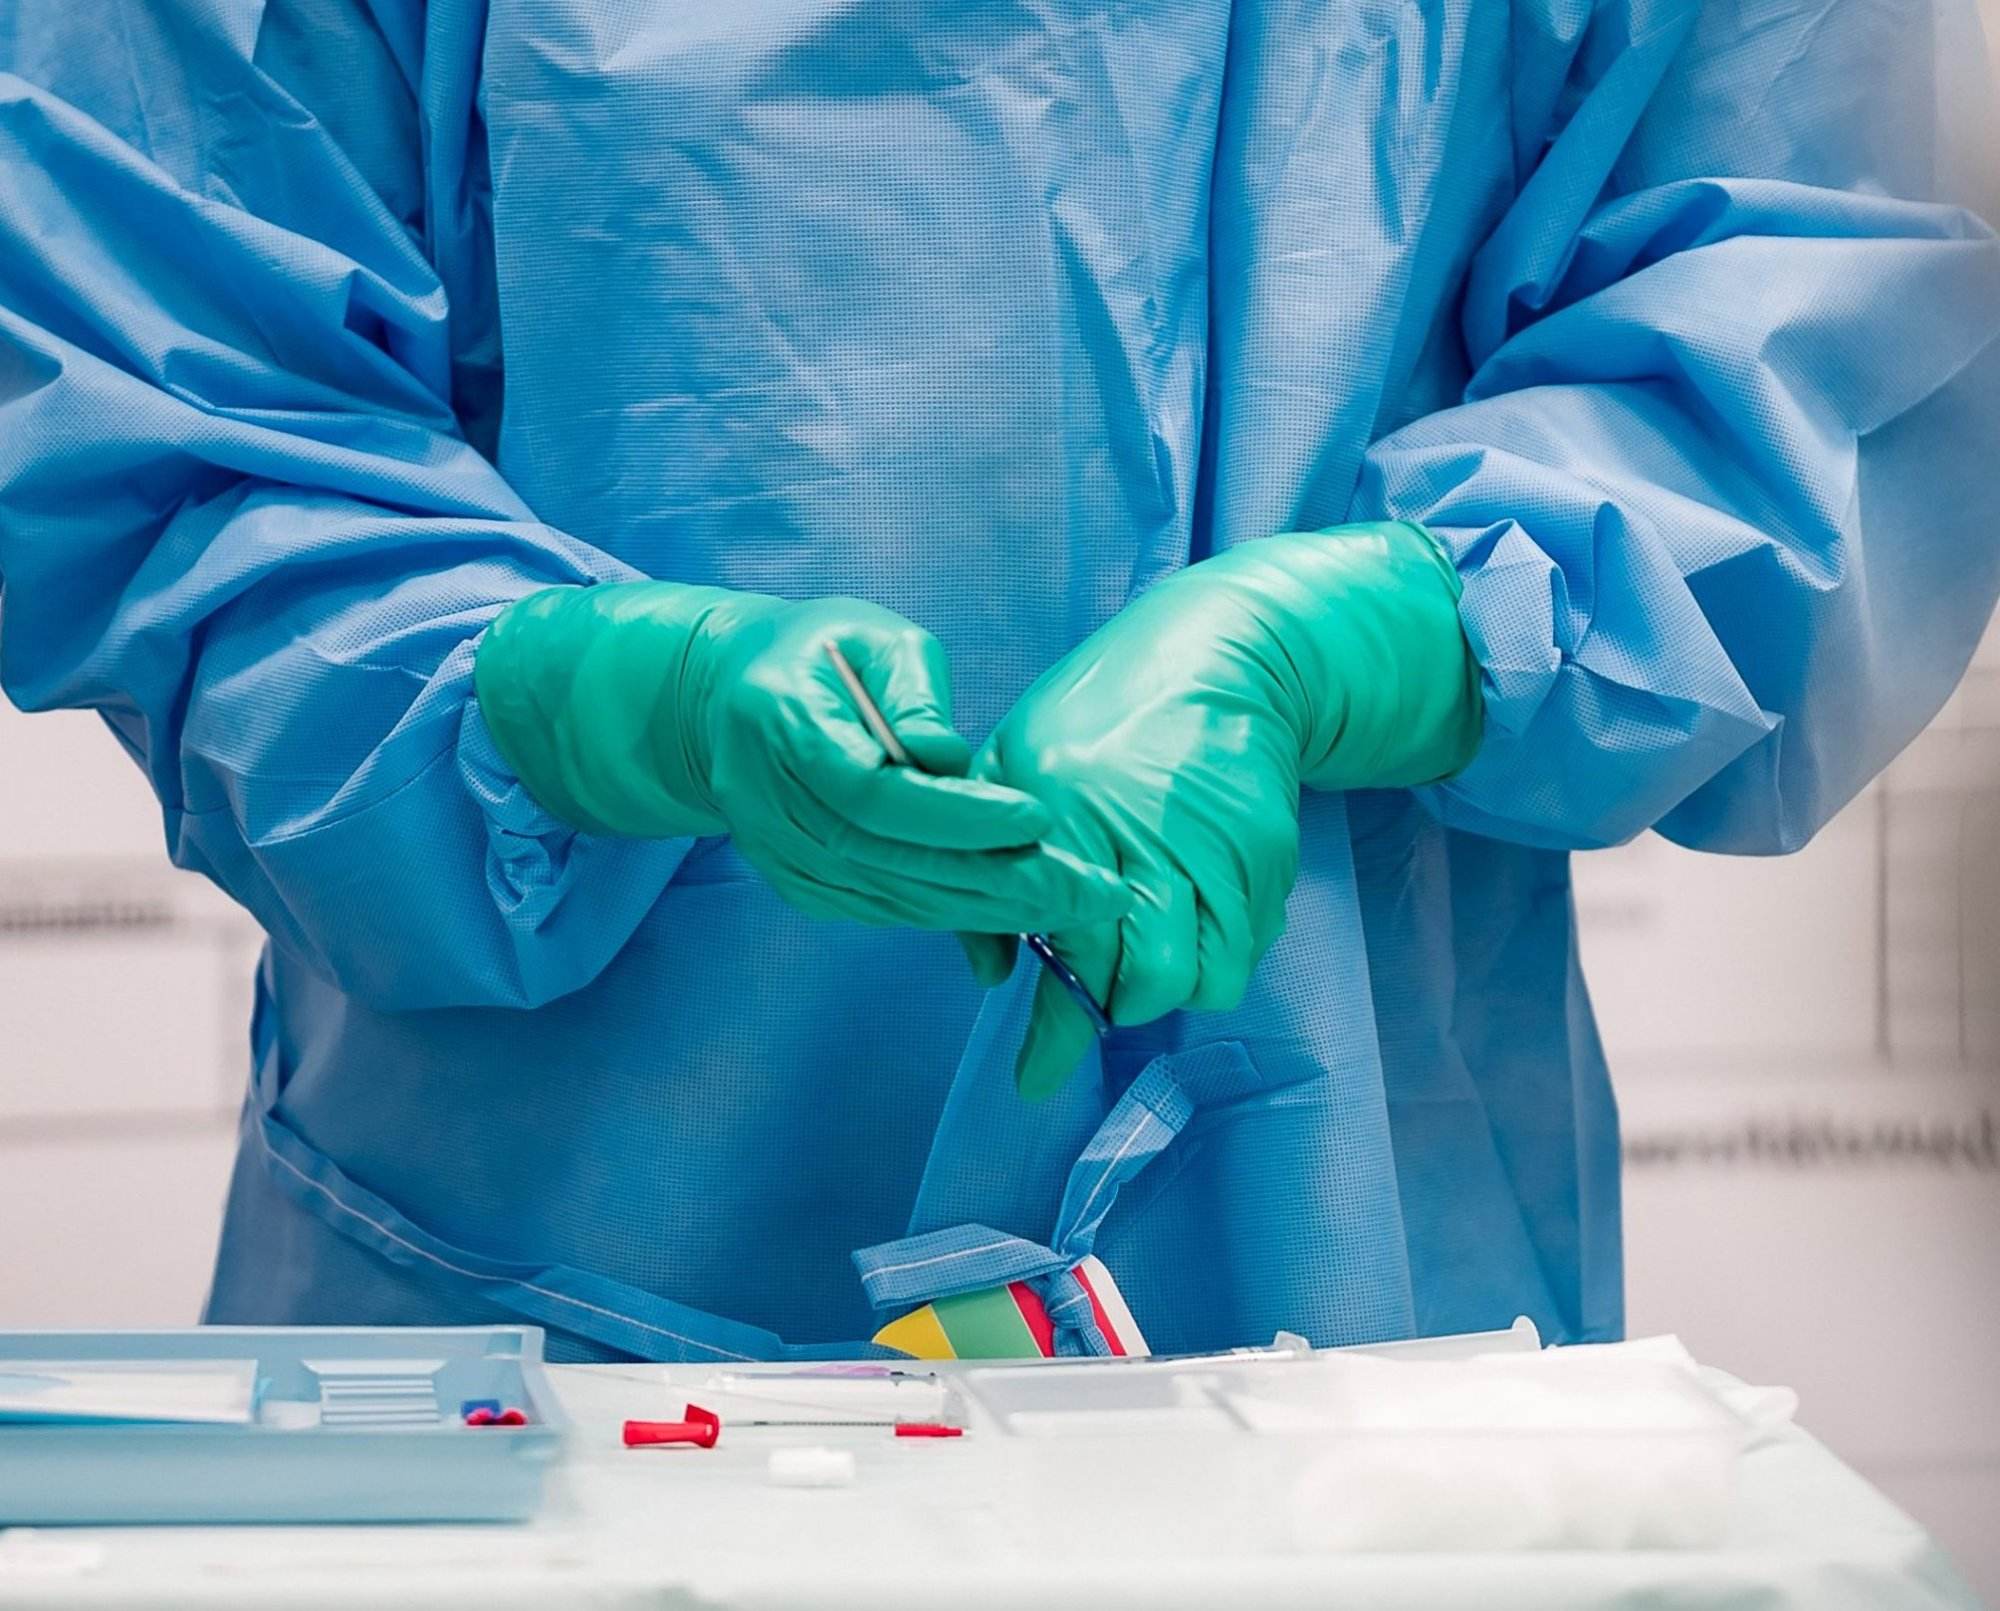 Das Bild zeigt einen Chirurgen in einem OP-Kittel und Handschuhen. Er steht in einem Operationssaal und hält ein chirurgisches Instrument in der Hand.